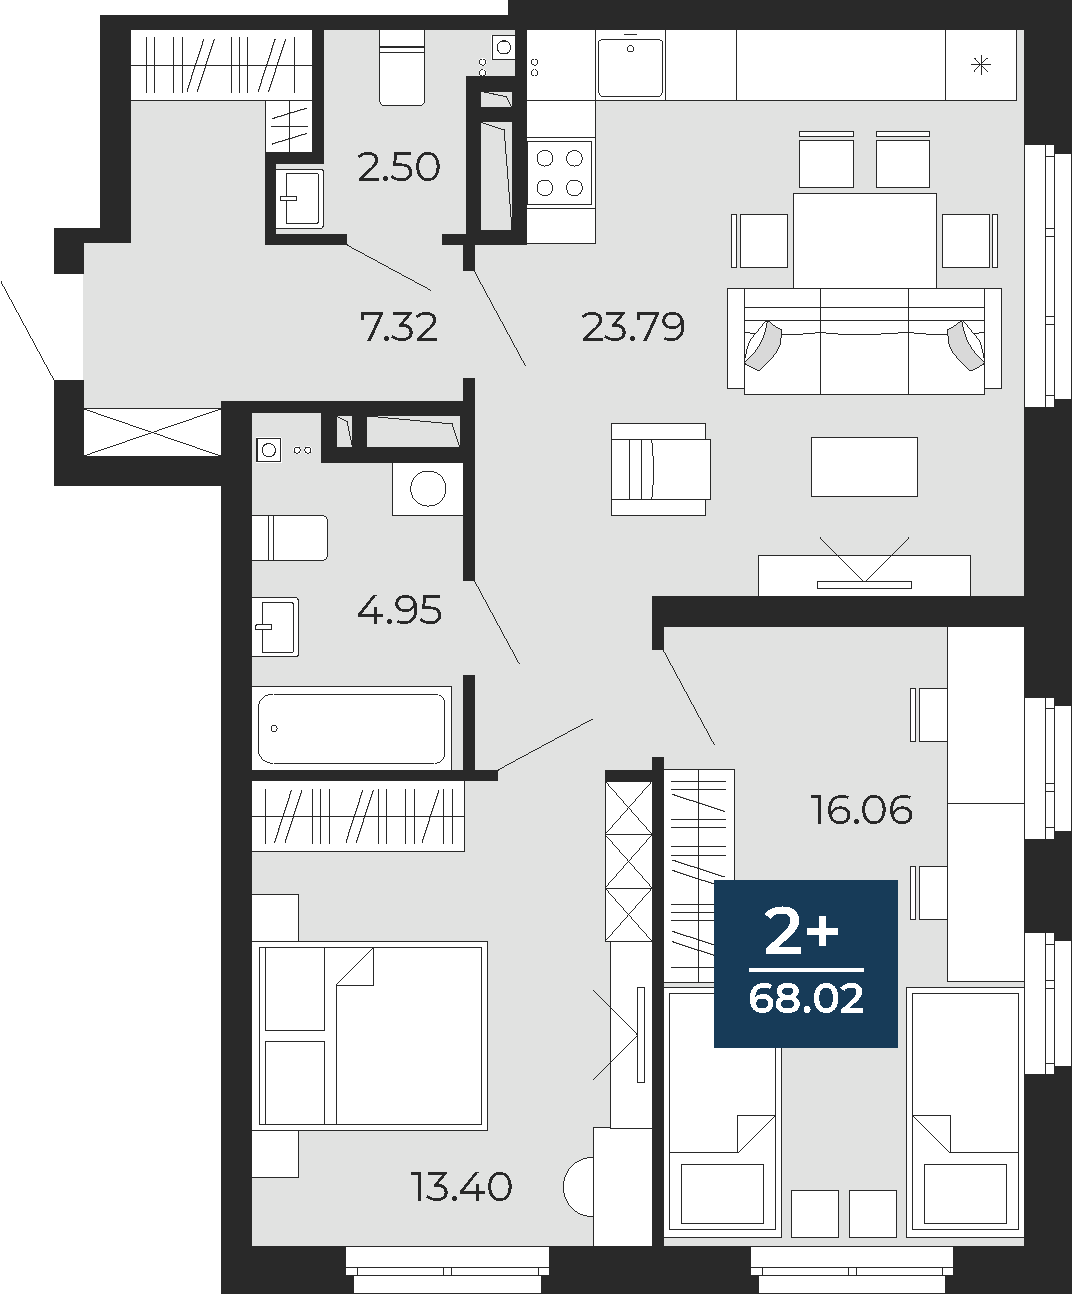 Квартира № 246, 2-комнатная, 68.02 кв. м, 19 этаж